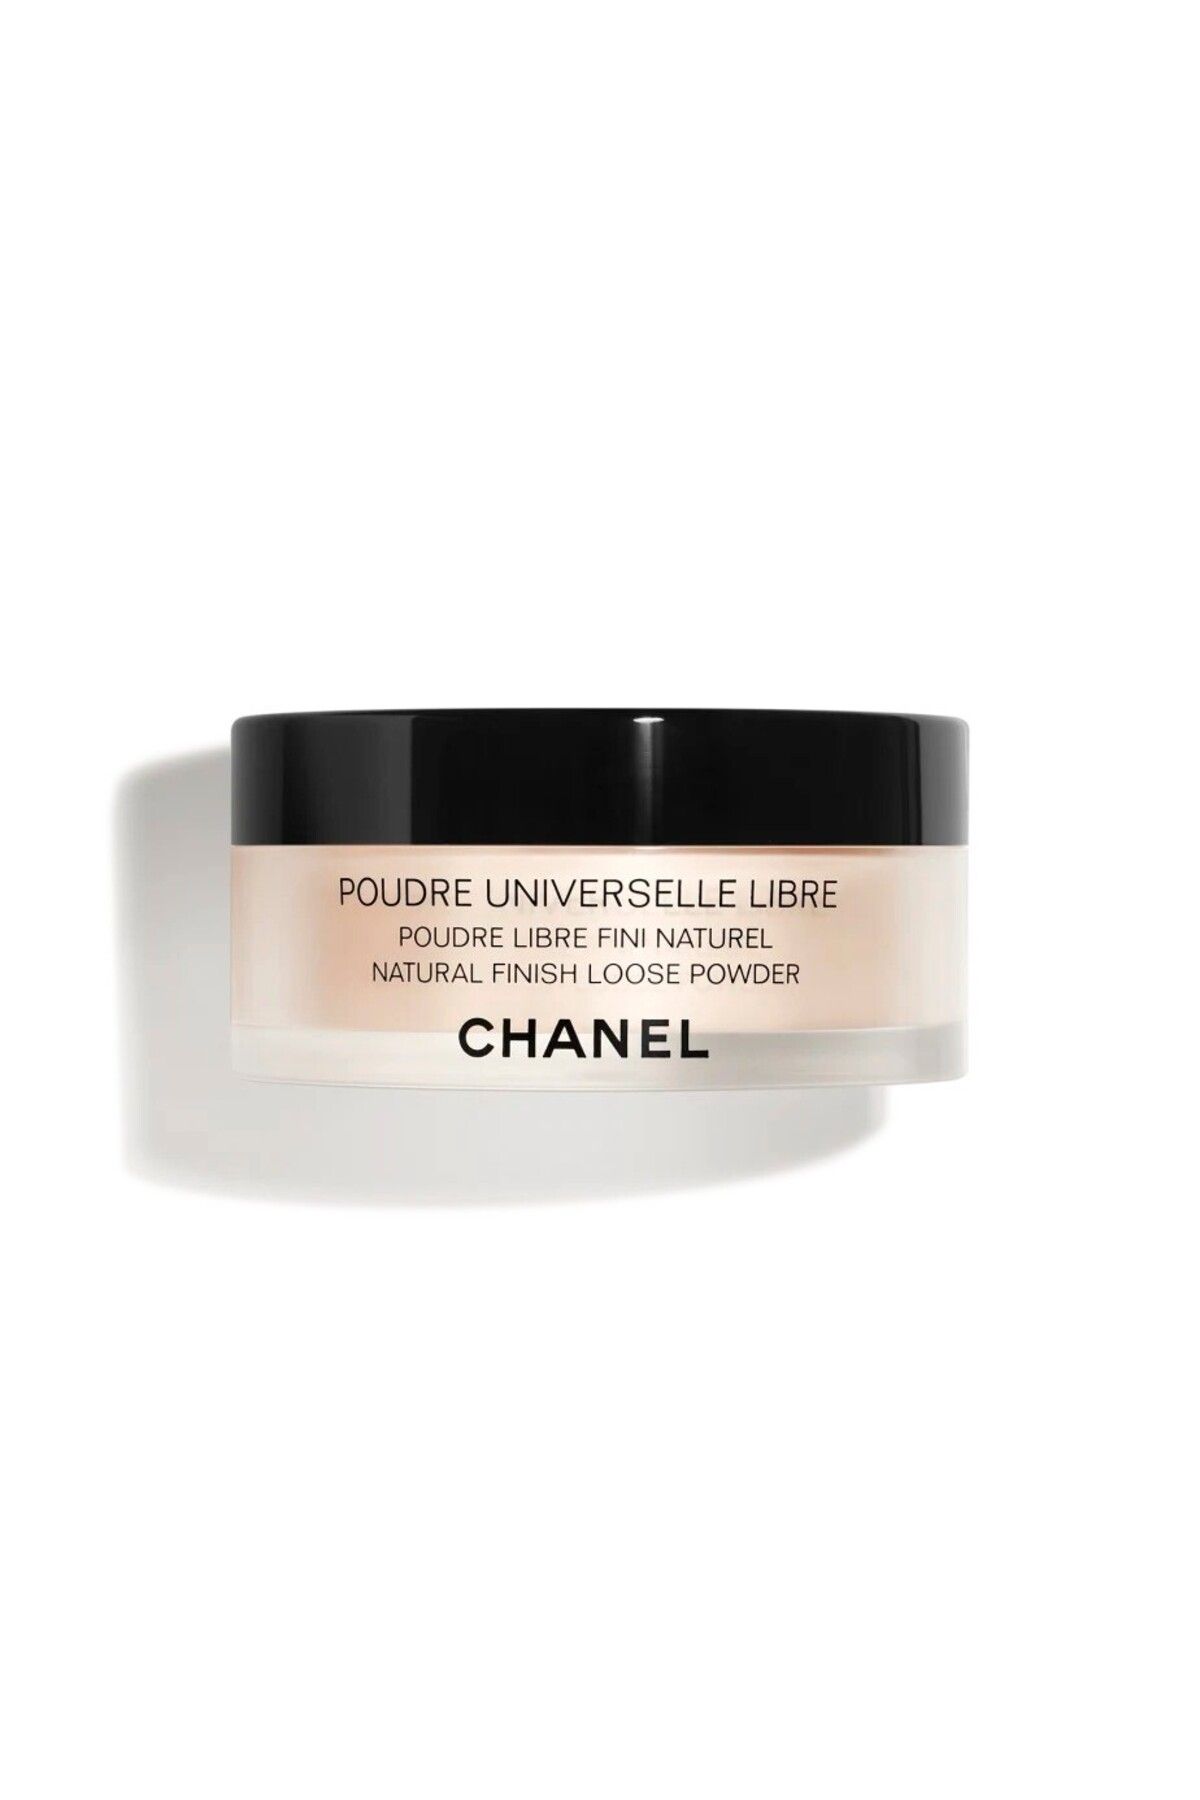 Chanel DOĞAL SONUÇ İÇİN TOZ PUDRA - POUDRE UNIVERSELLE LIBRE - 20